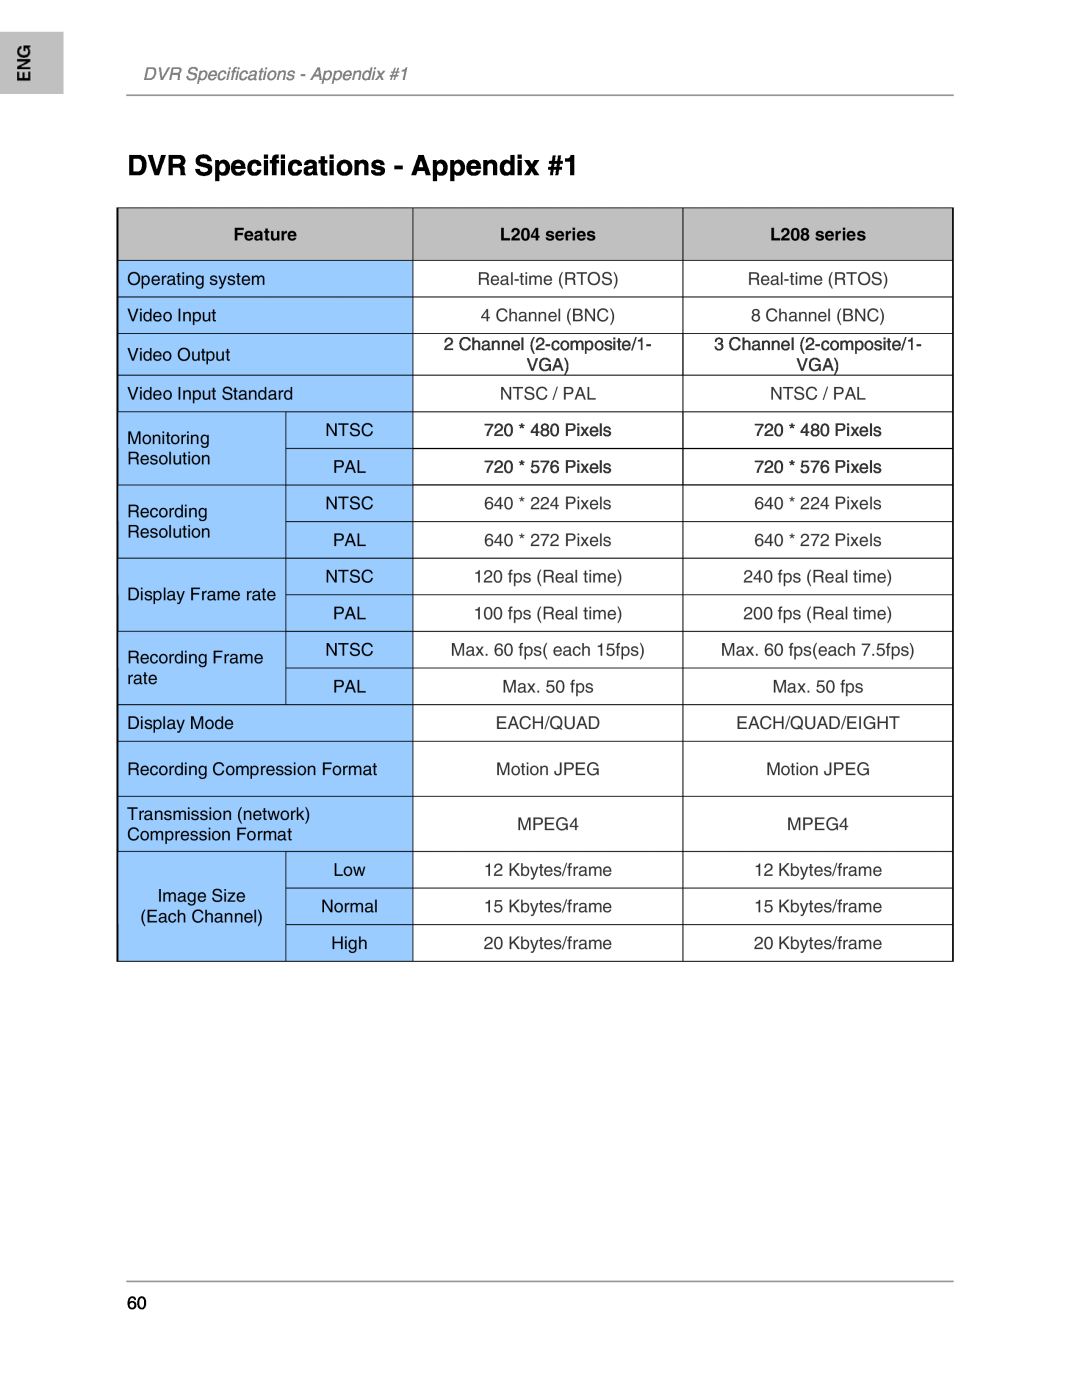 LOREX Technology instruction manual DVR Specifications - Appendix #1, Feature, L204 series, L208 series 